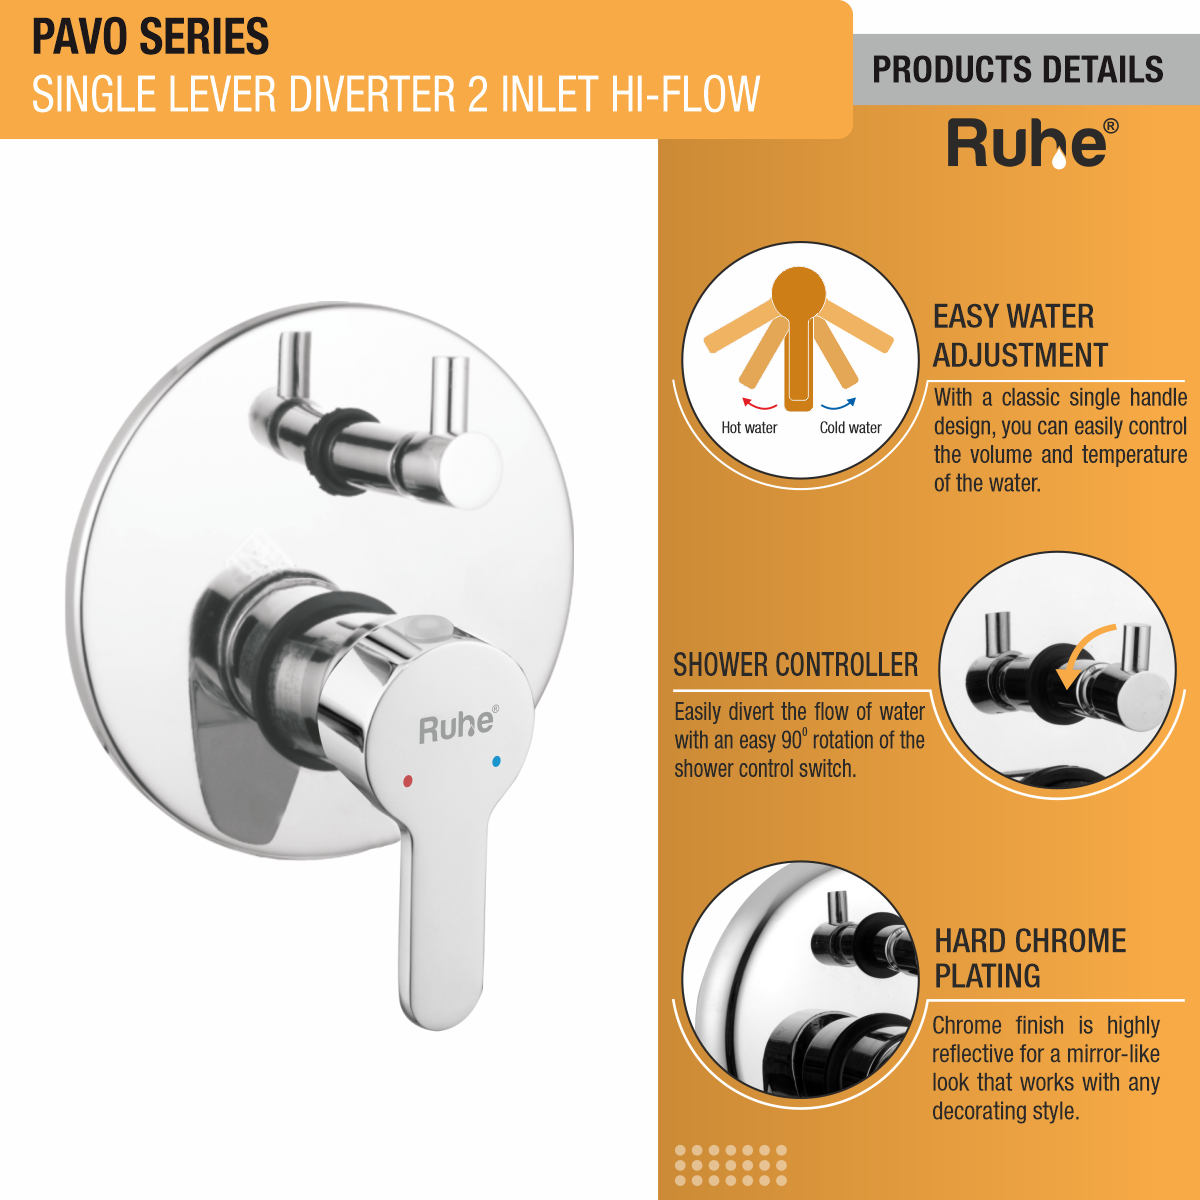 Pavo Single Lever 2-inlet Hi-Flow Diverter (Complete Set) product details